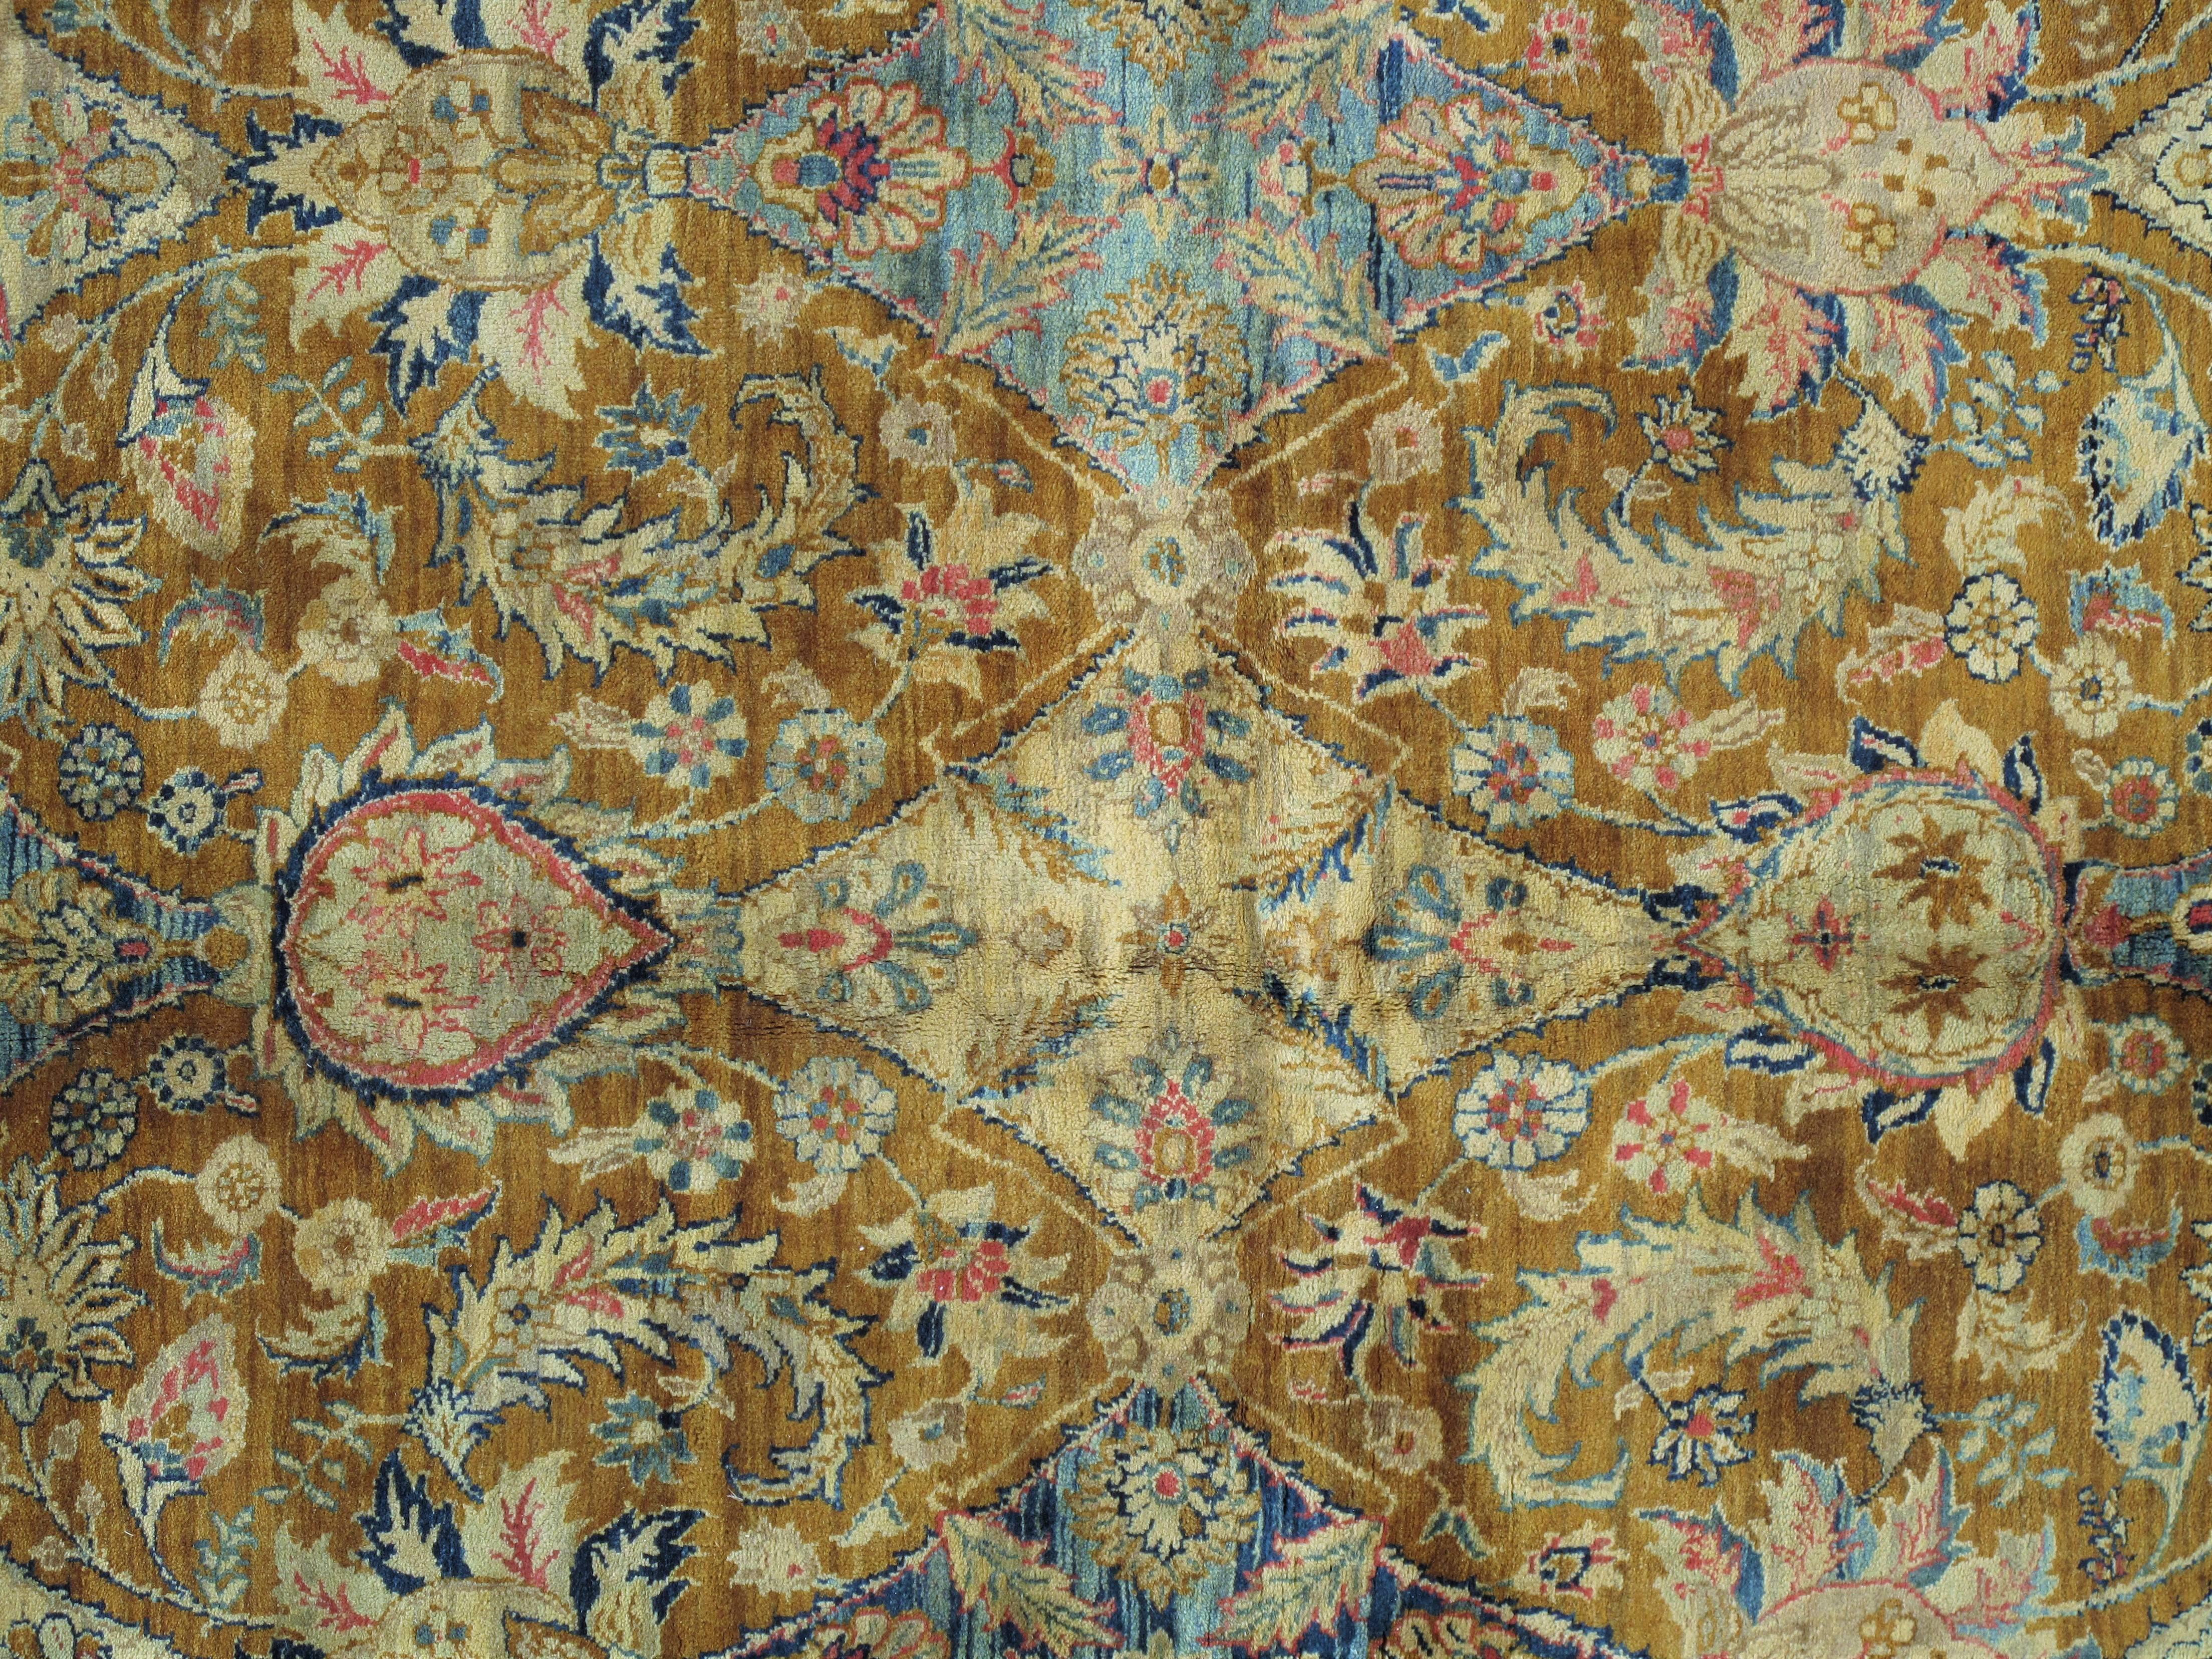 Täbris-Teppiche gehören seit jeher zu den bekanntesten und schönsten Stoffen Persiens, mit geschwungenen, anmutigen Blumenmustern in einer leuchtenden Vielfalt von Farben. Von den 1870er bis in die 1930er Jahre sind die Teppiche aus Täbris durchweg